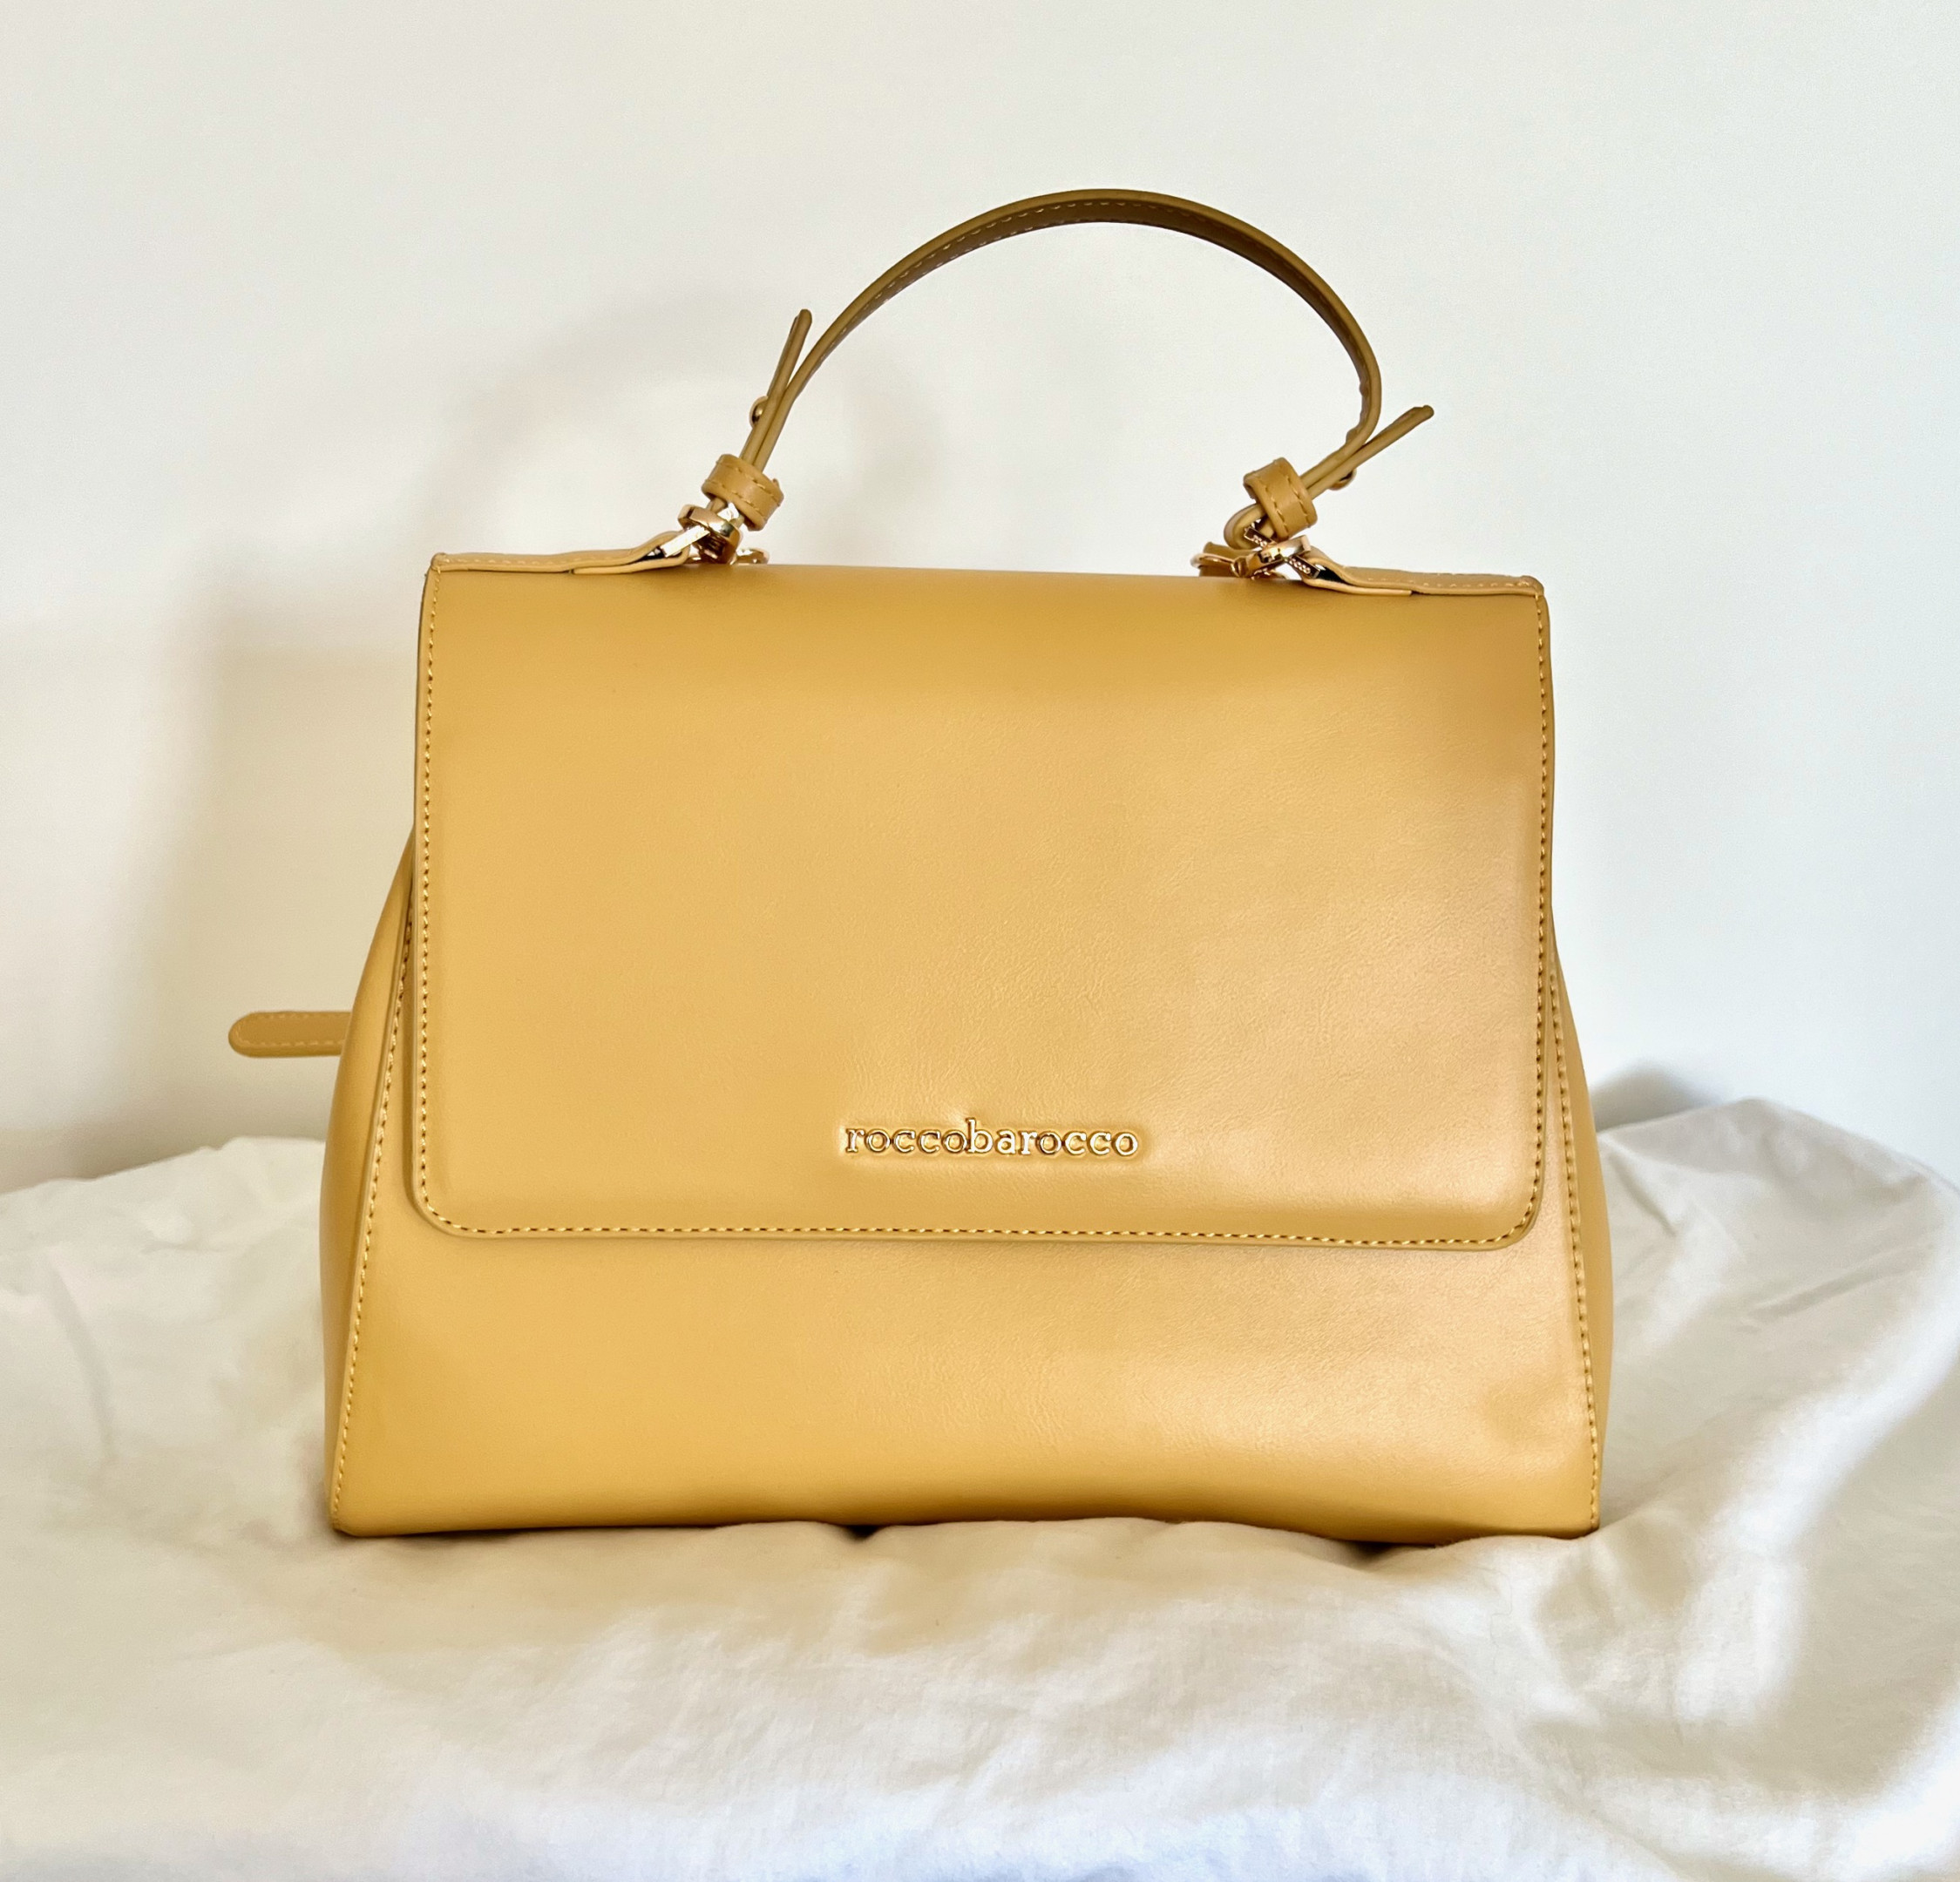 Roccobarocco leather handbag